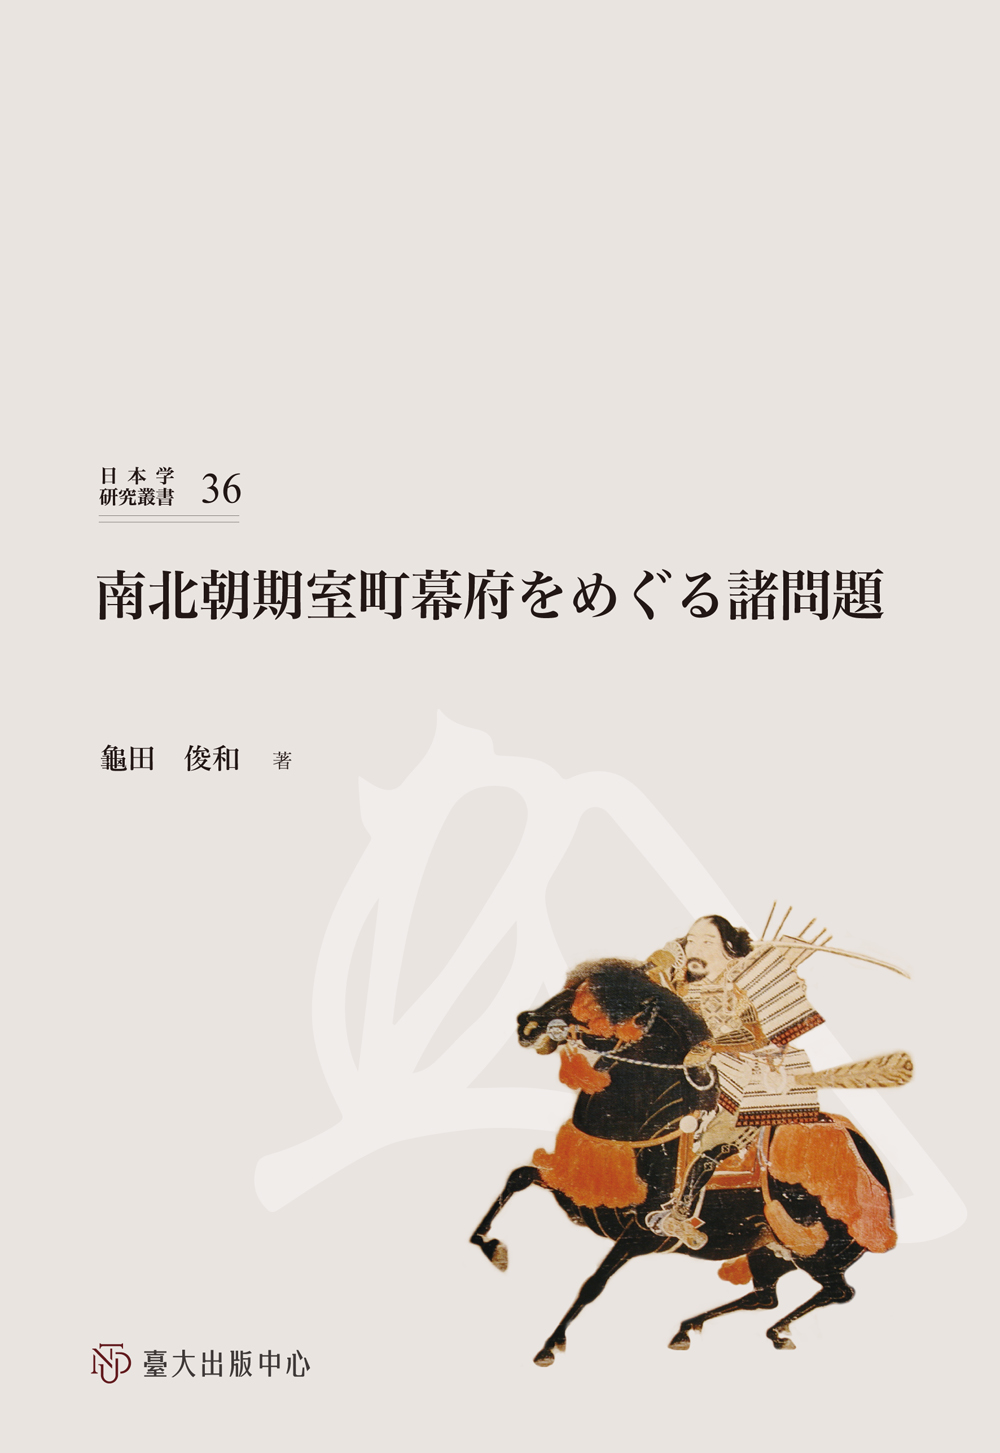 Issues of Muromachi shogunate in Nanbokucho Period